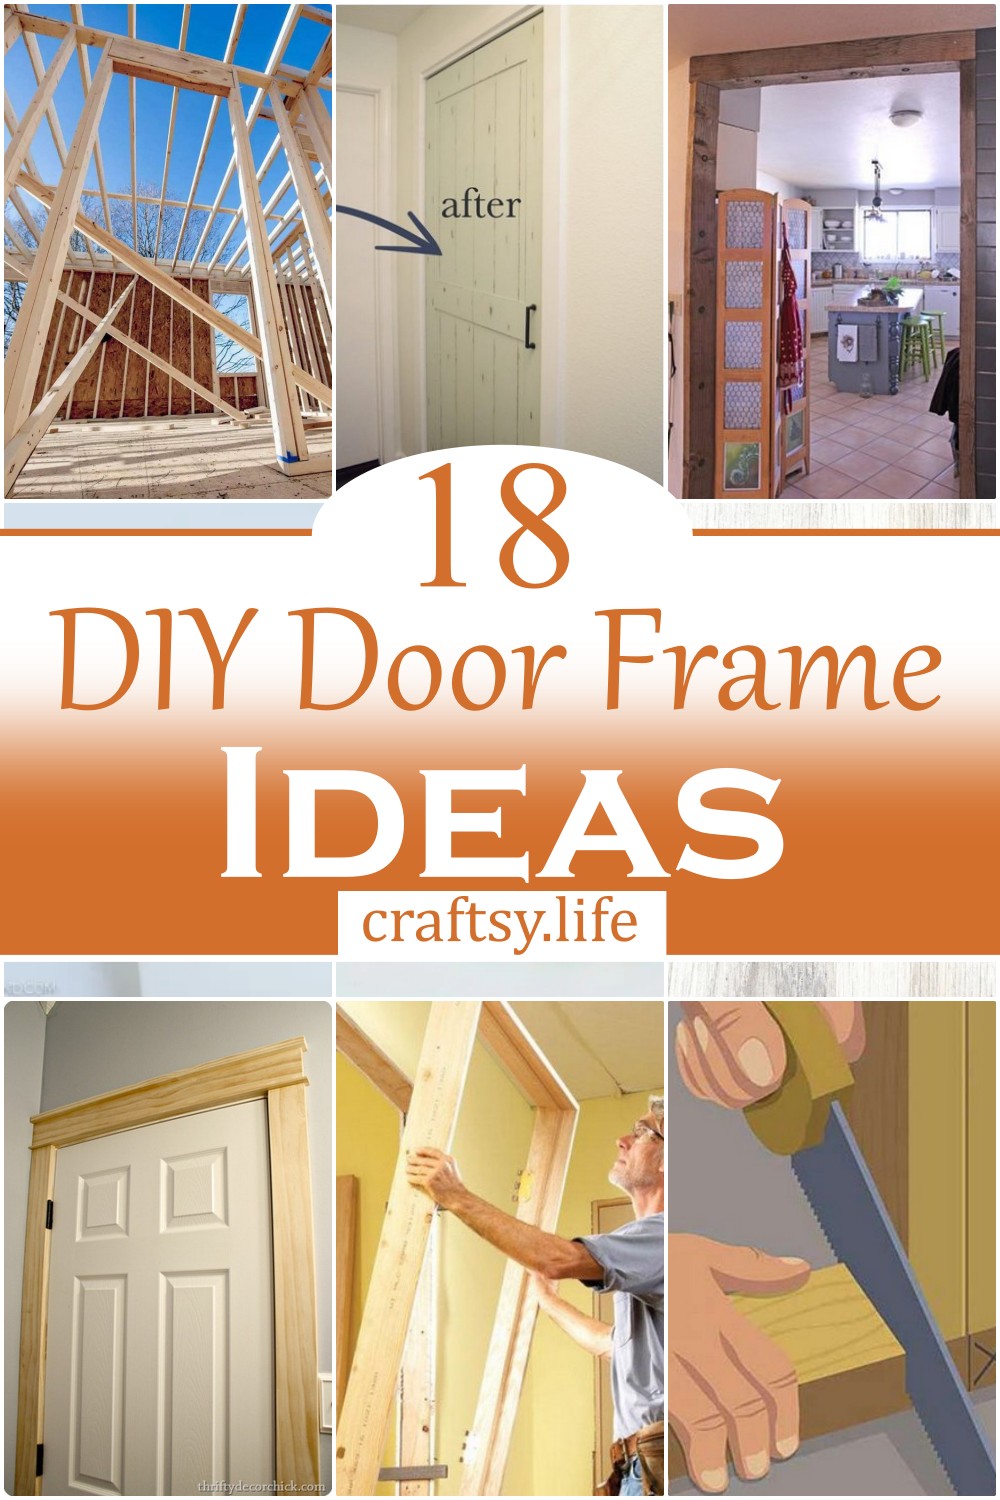 DIY Door Frame Ideas